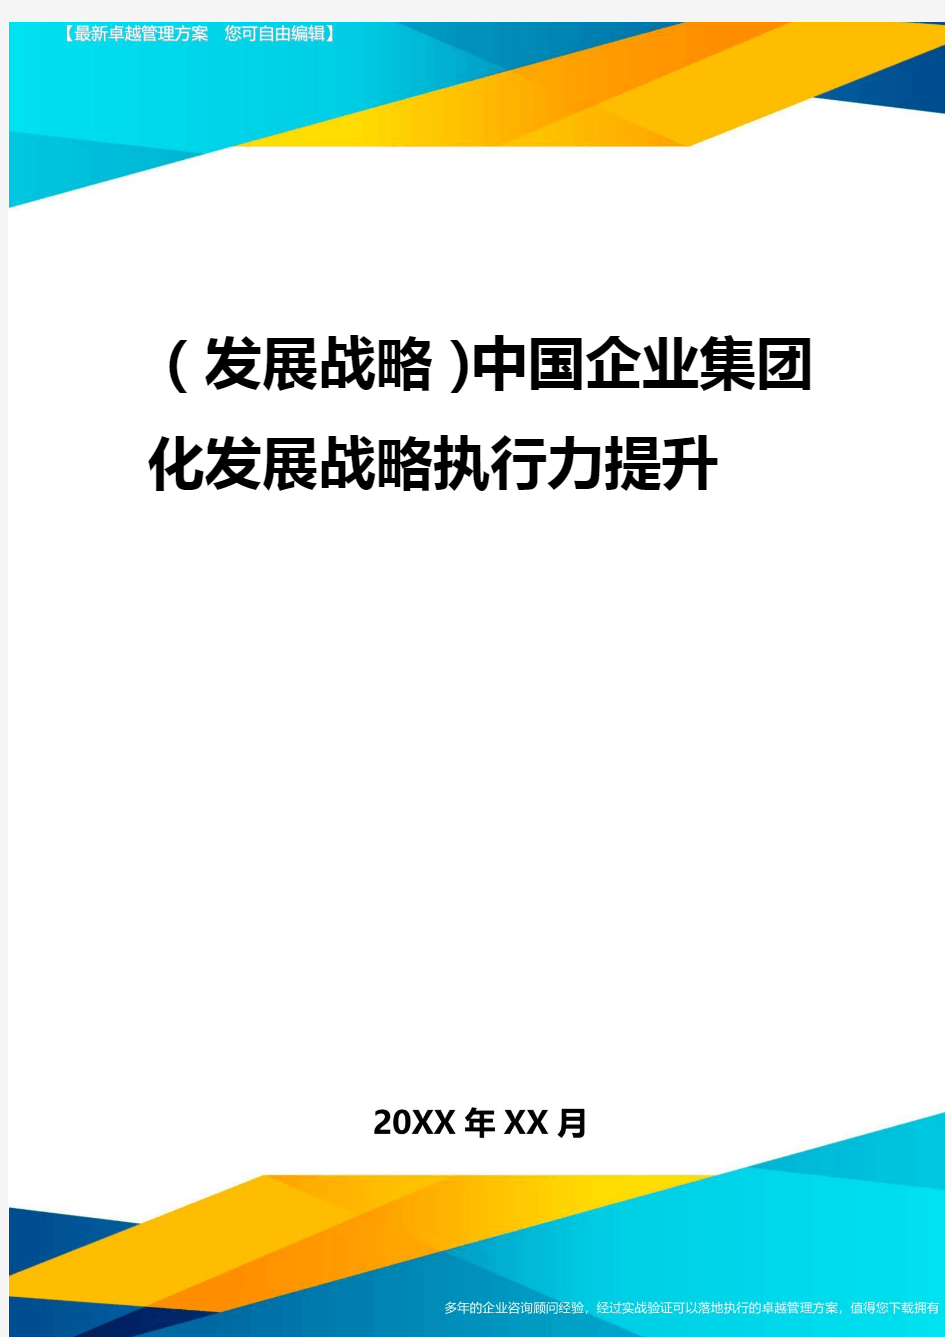 2020年(发展战略)中国企业集团化发展战略执行力提升